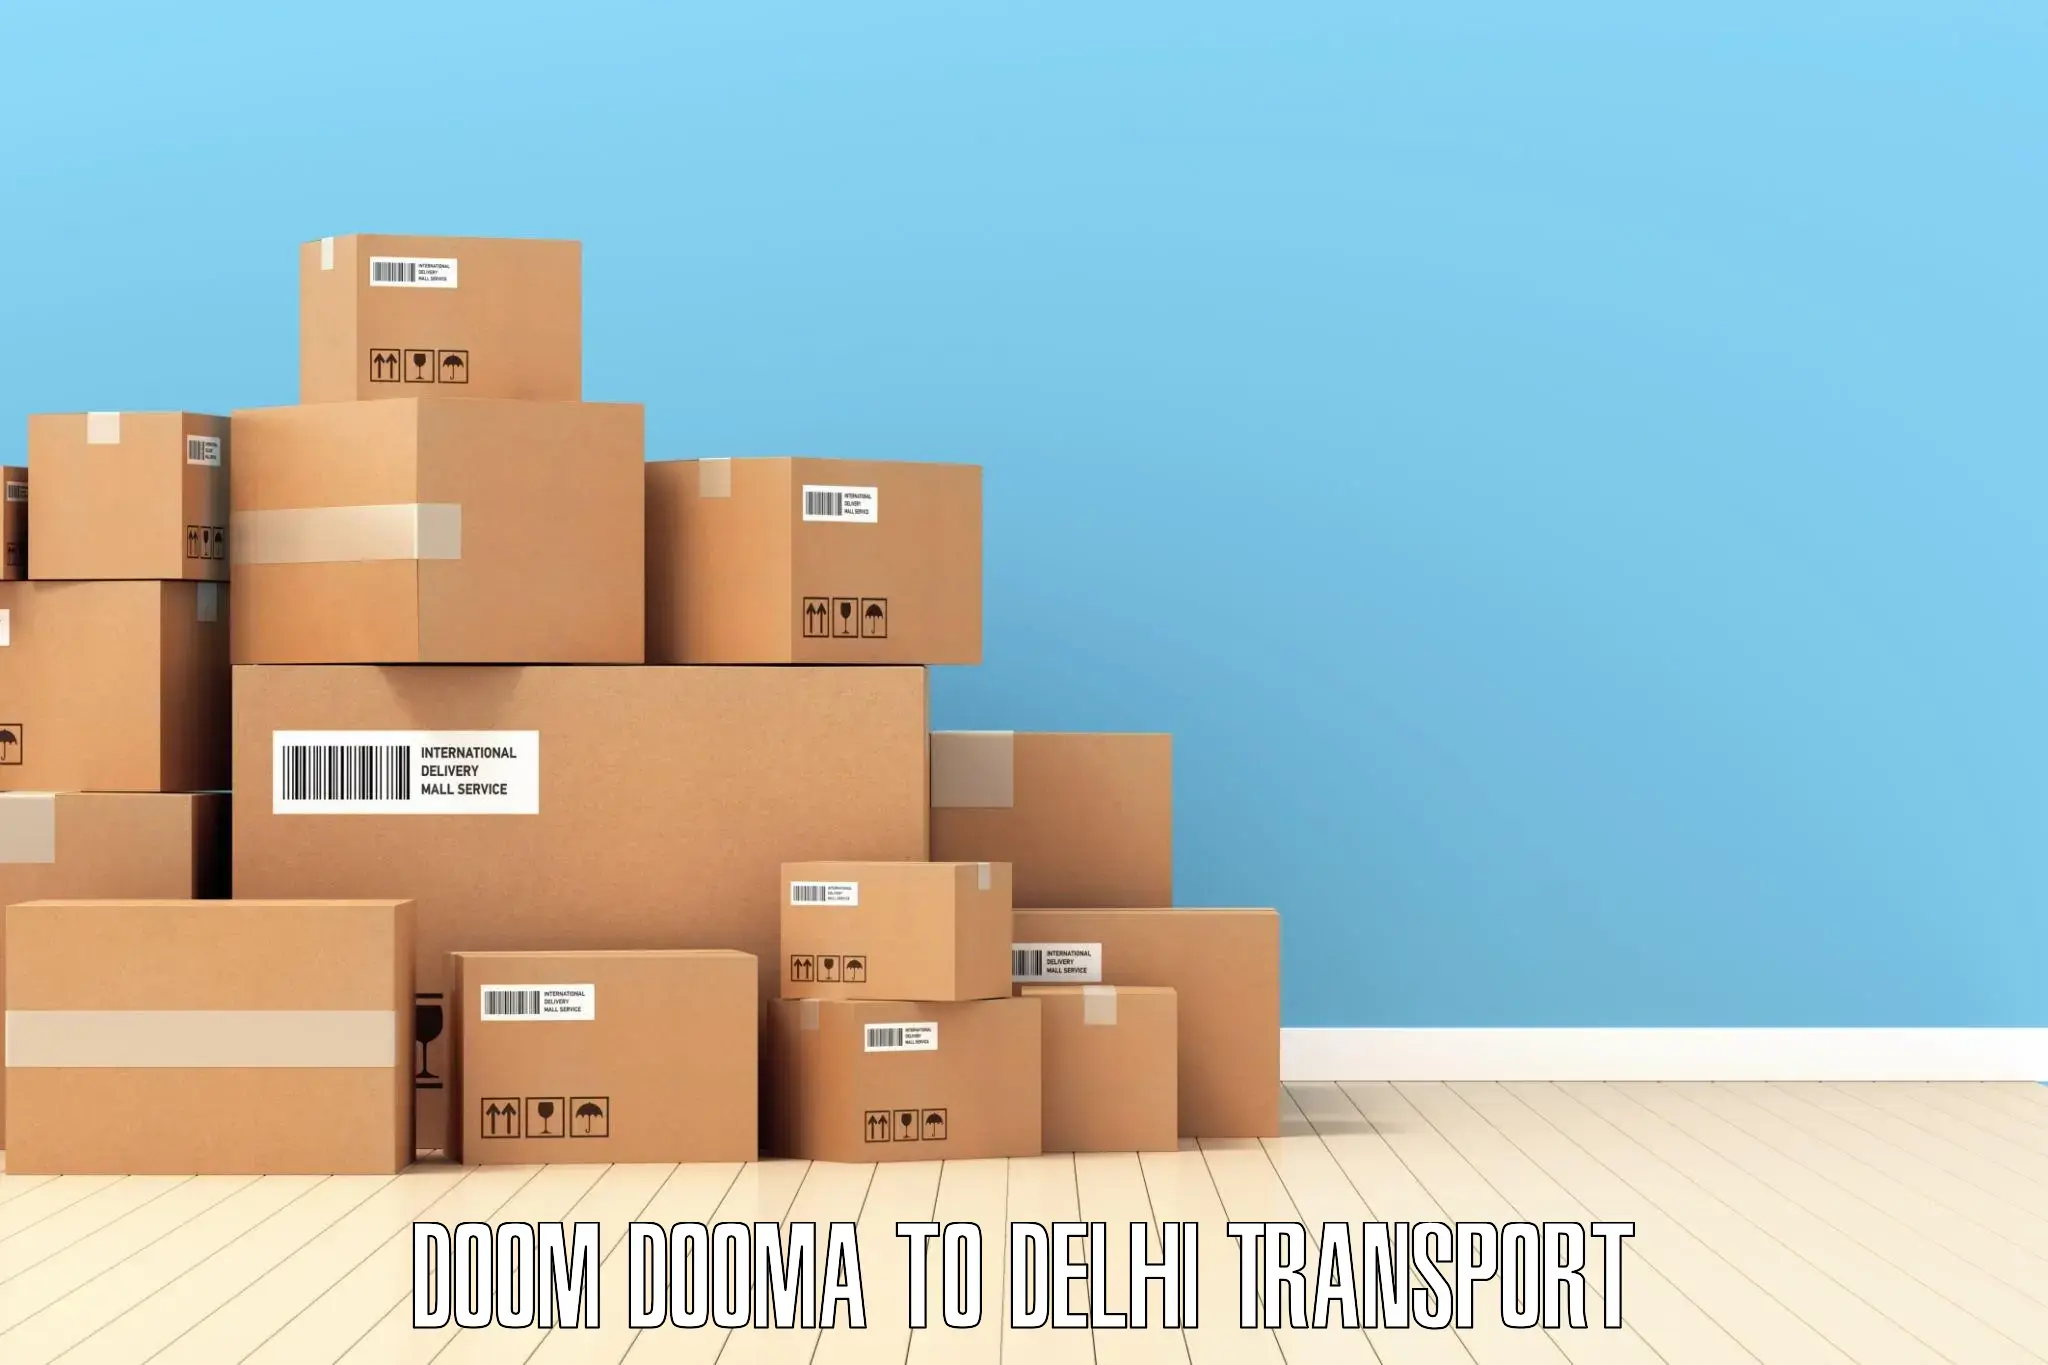 Logistics transportation services Doom Dooma to IIT Delhi